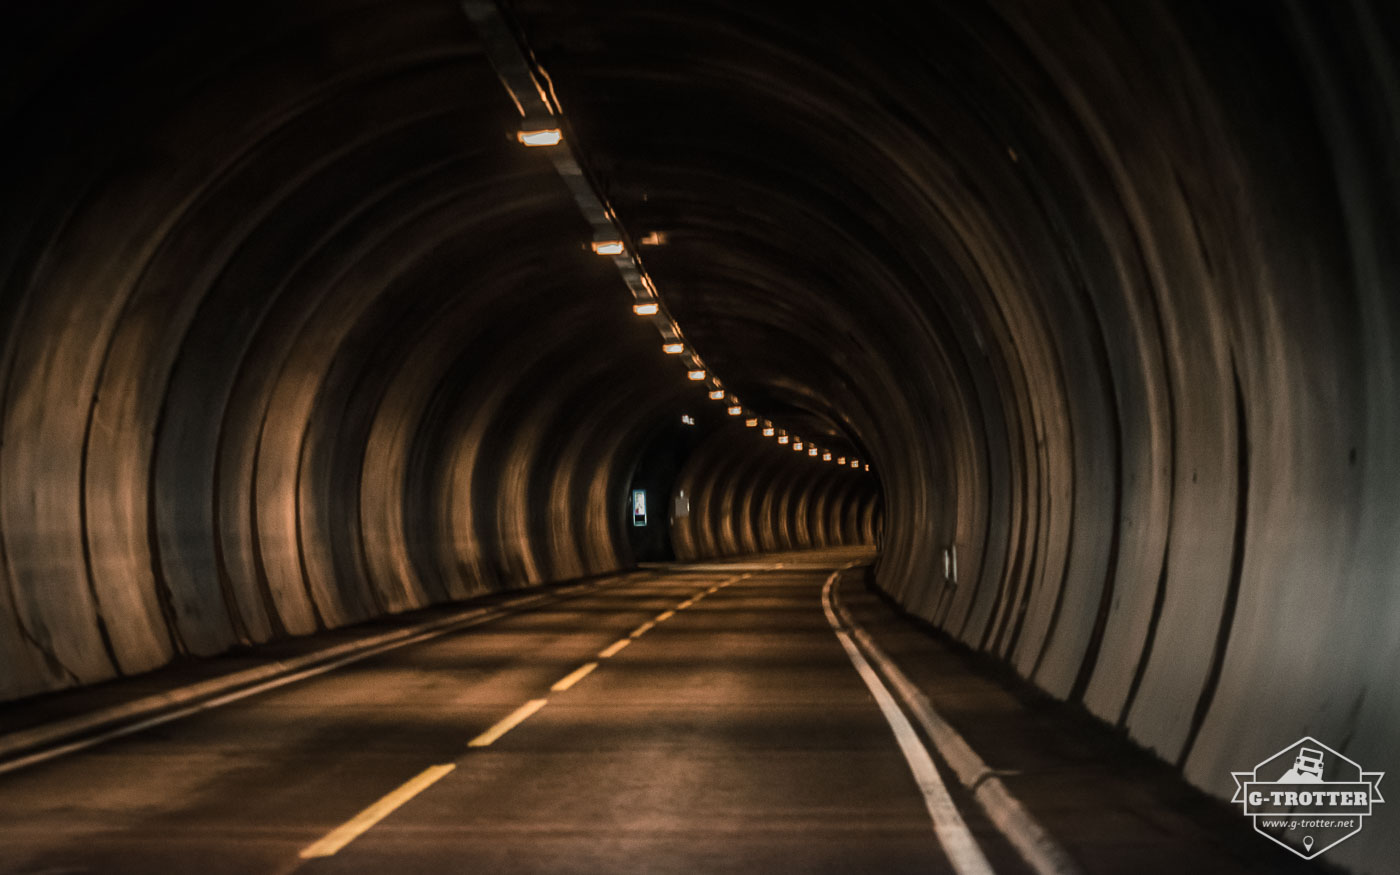 The North Cape Tunnel runs below the sea level.